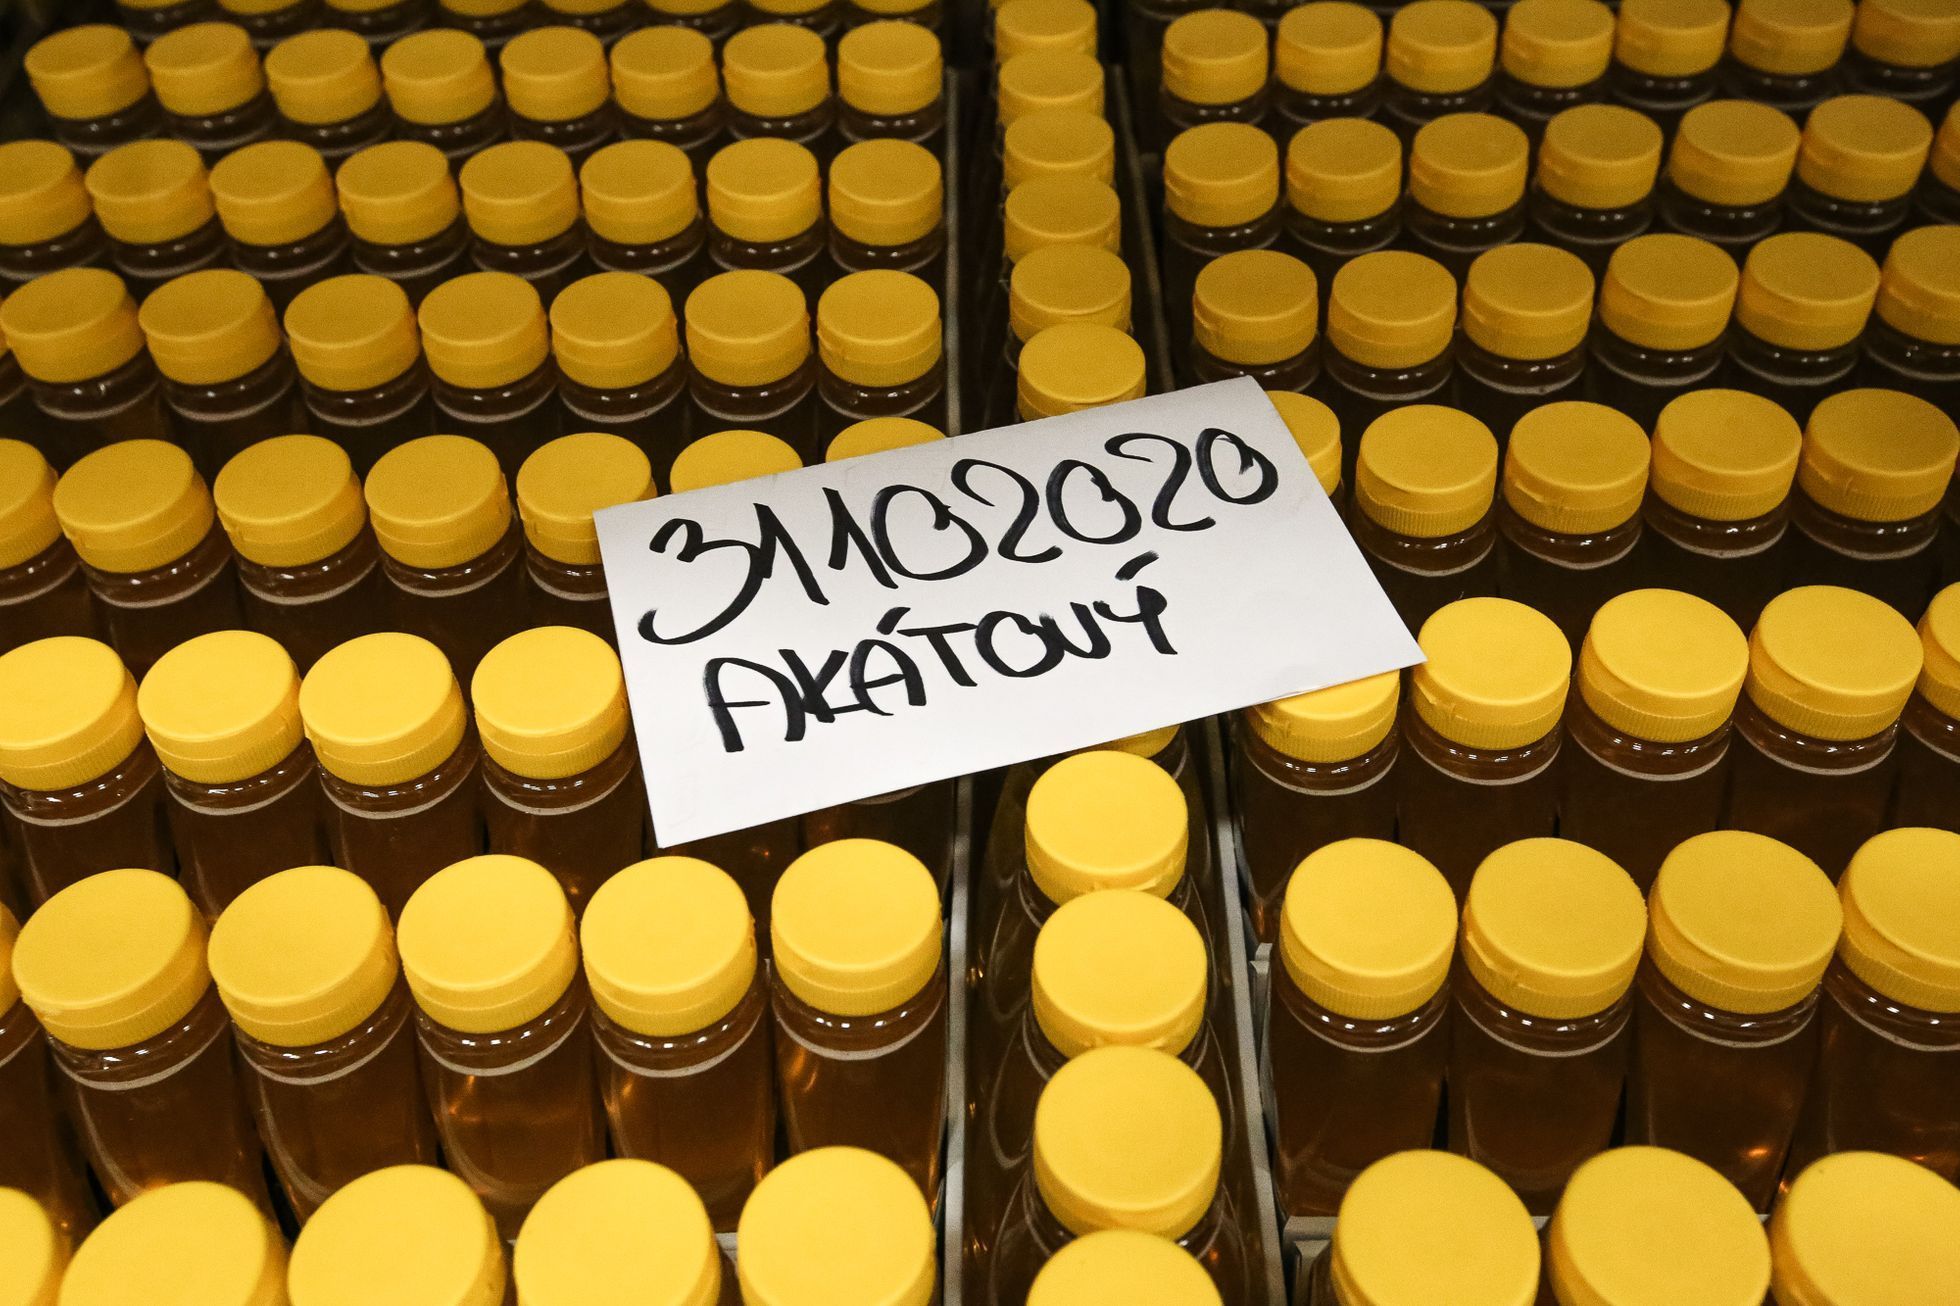 Největší továrna na stáčení medu v Česku - Medokomerc